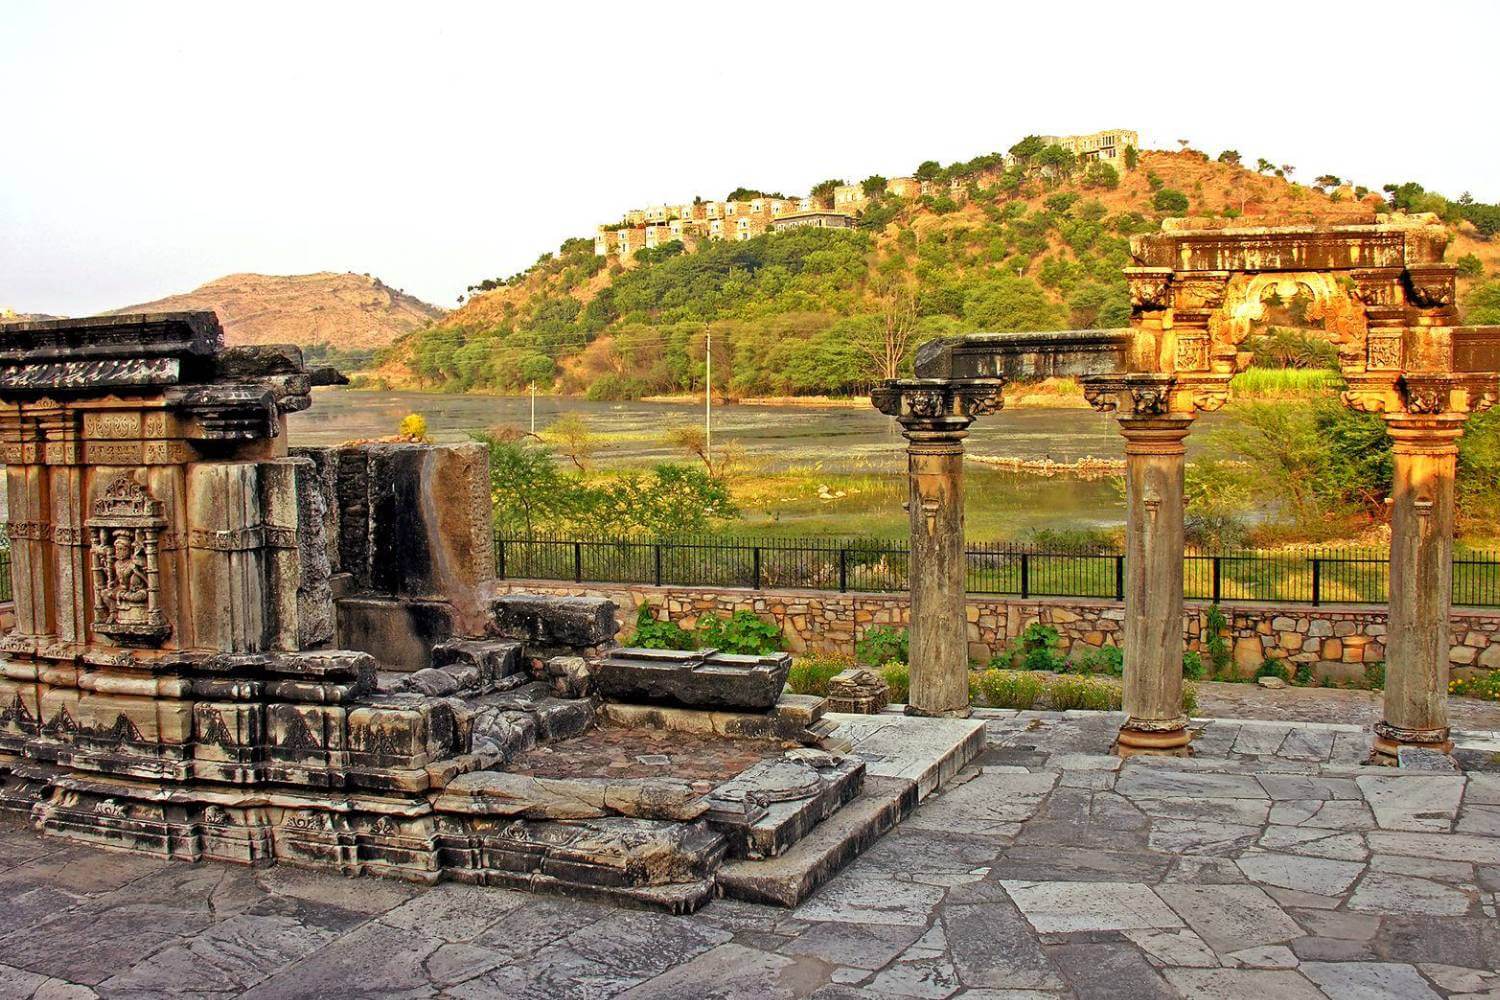 Eklingji Temple Udaipur